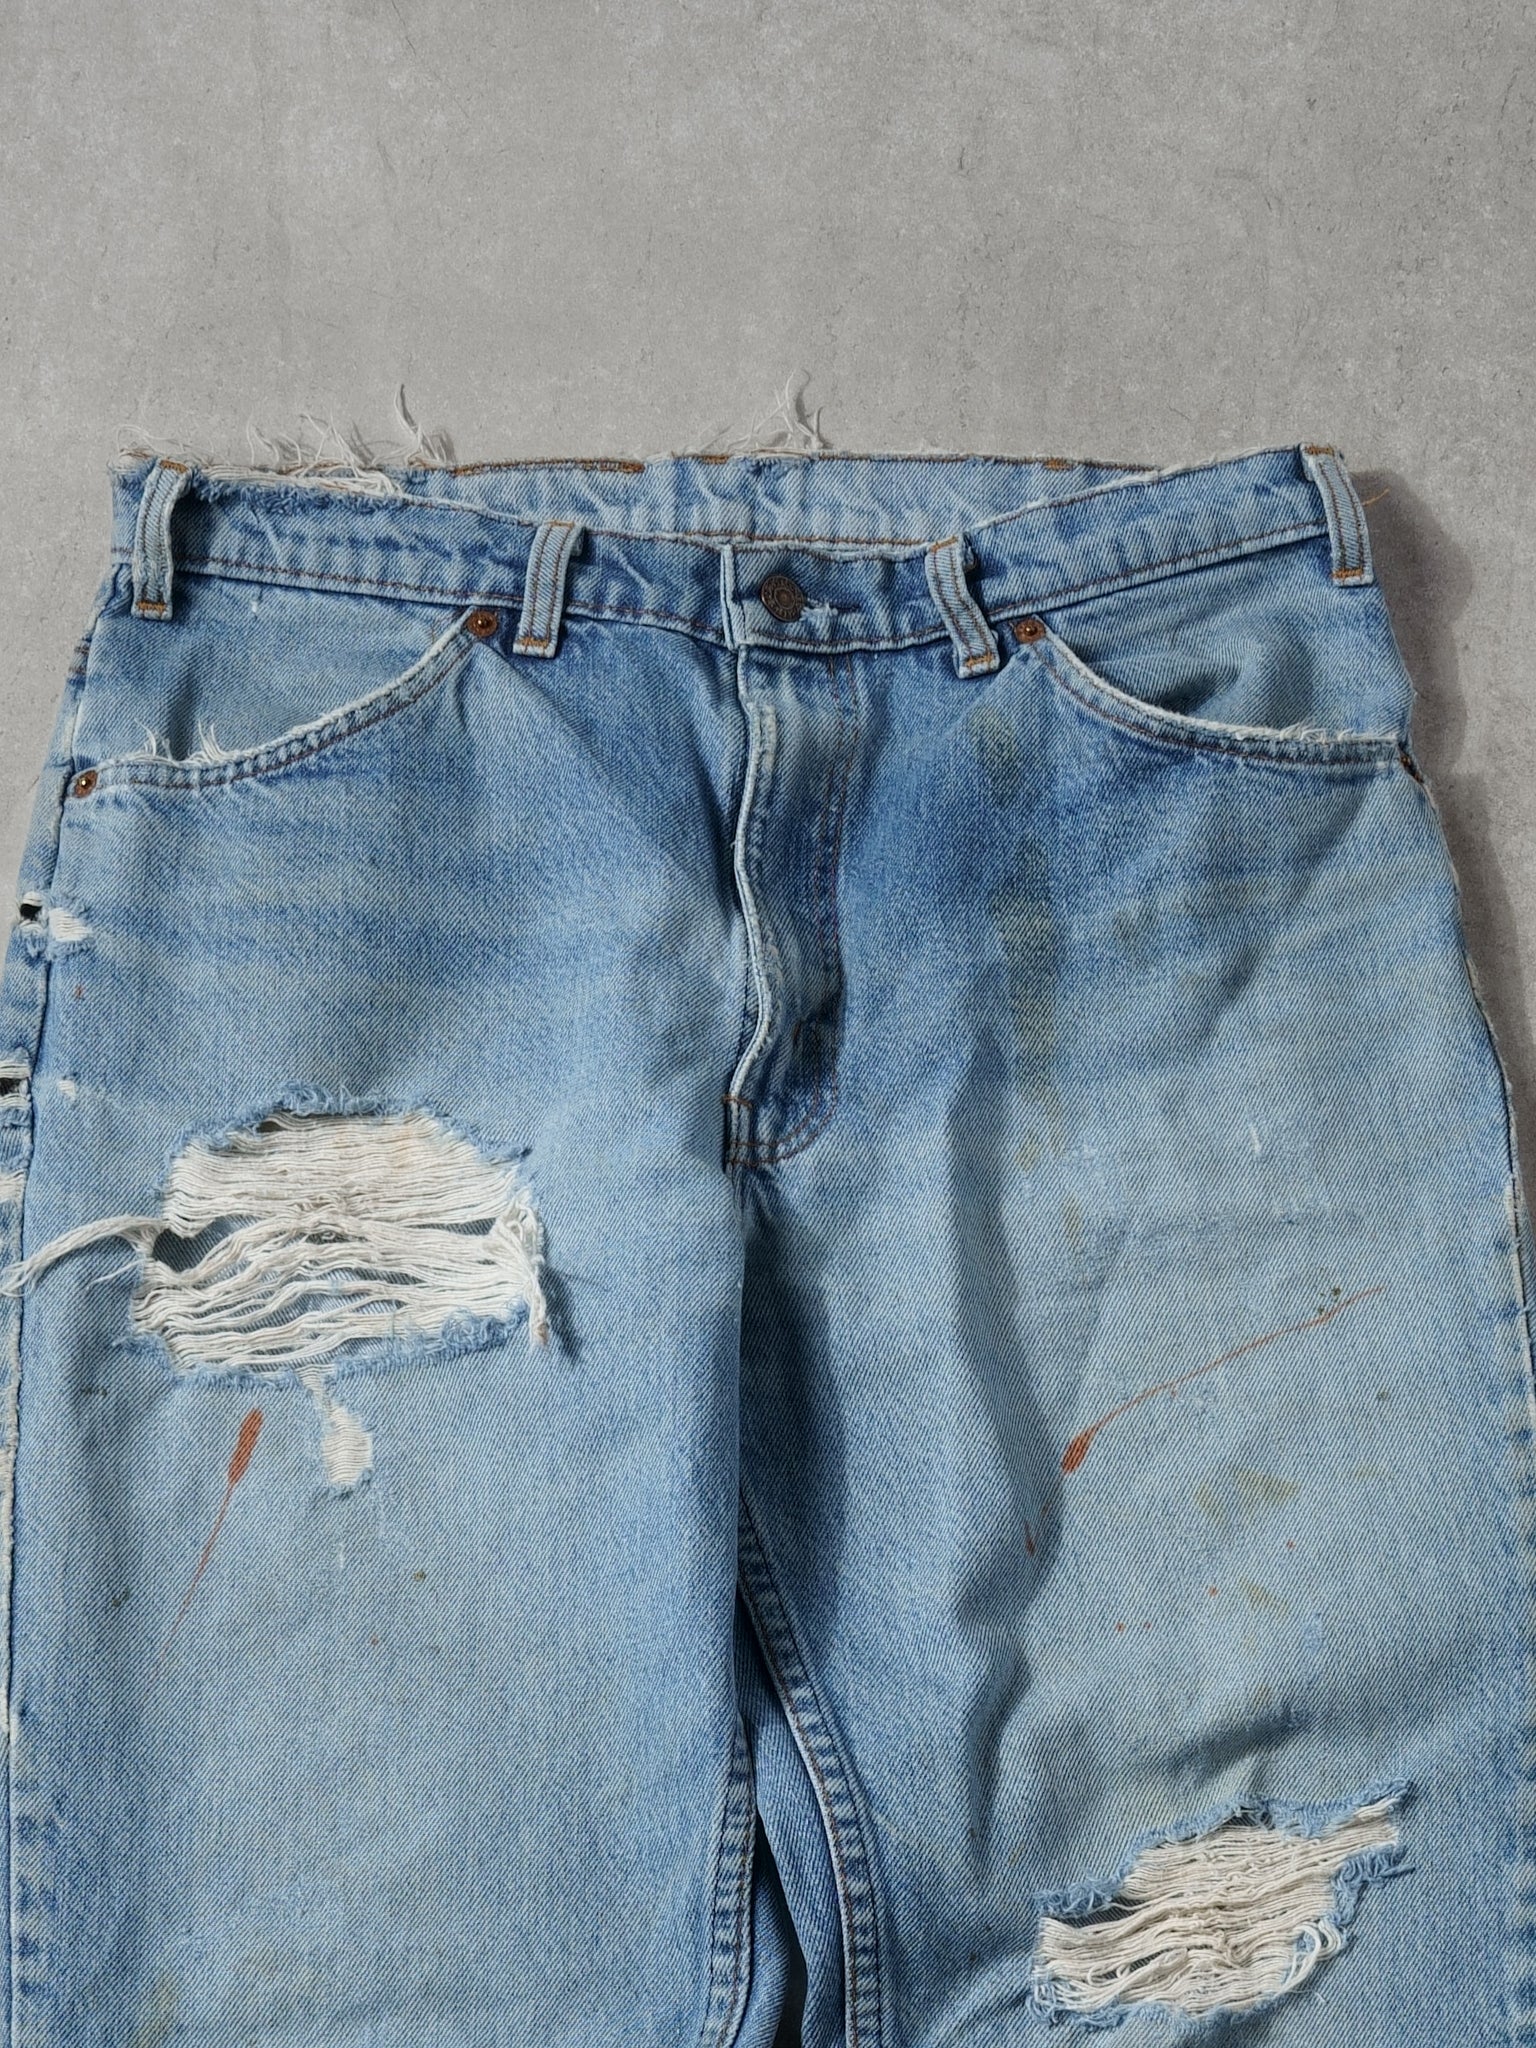 Vintage 90s Light Washed Levi's 619 Denim Jeans (32x30)